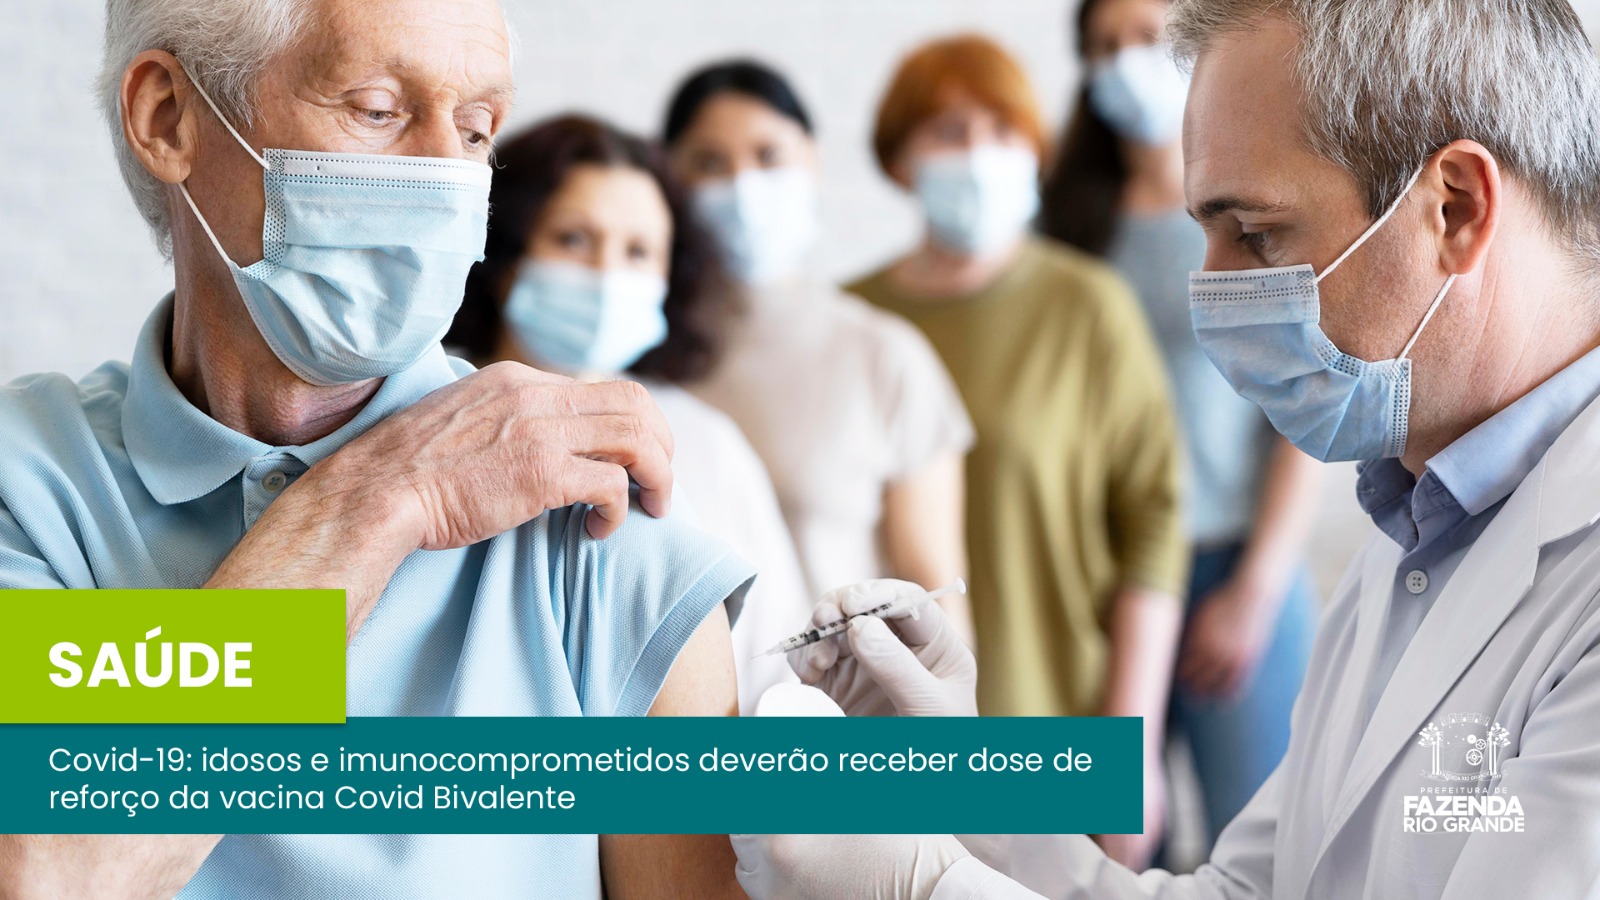 Covid-19: idosos e imunocomprometidos deverão receber dose de reforço da vacina Covid Bivalente